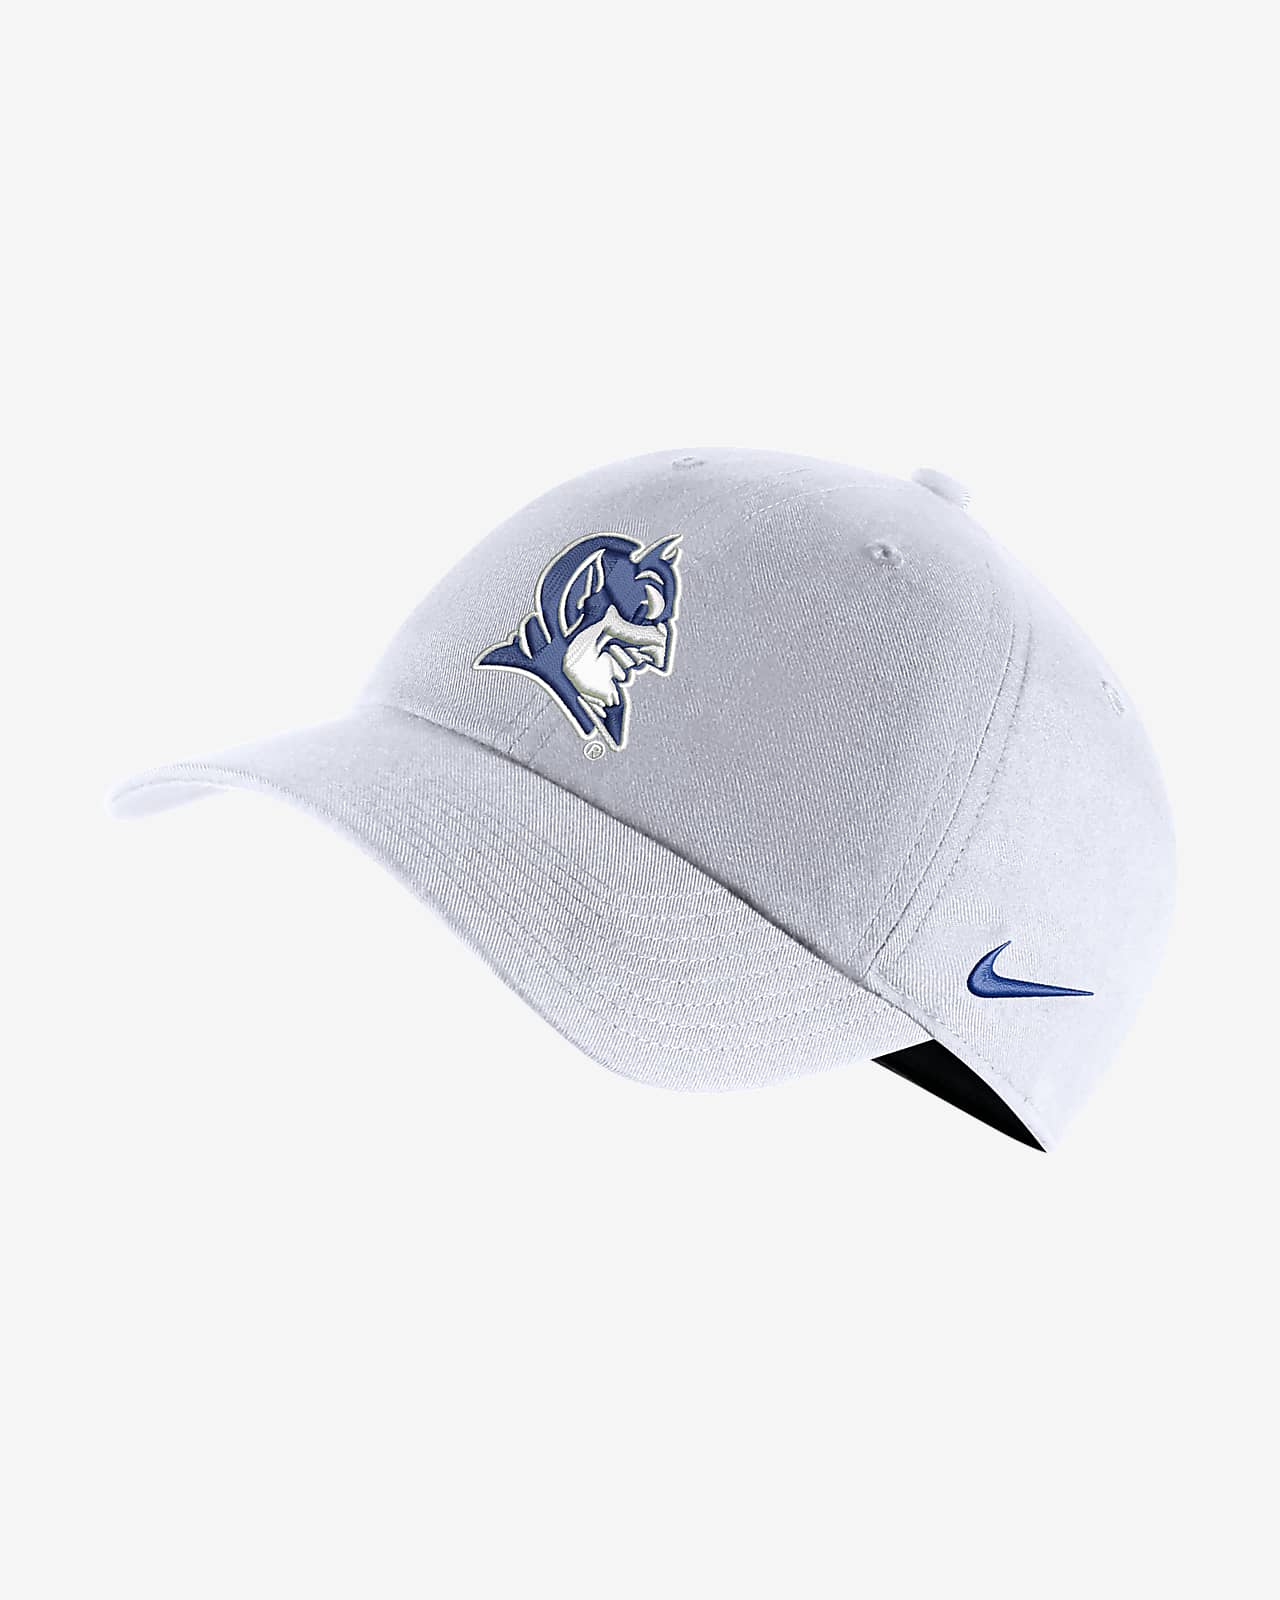 Nike College (Duke) Adjustable Hat